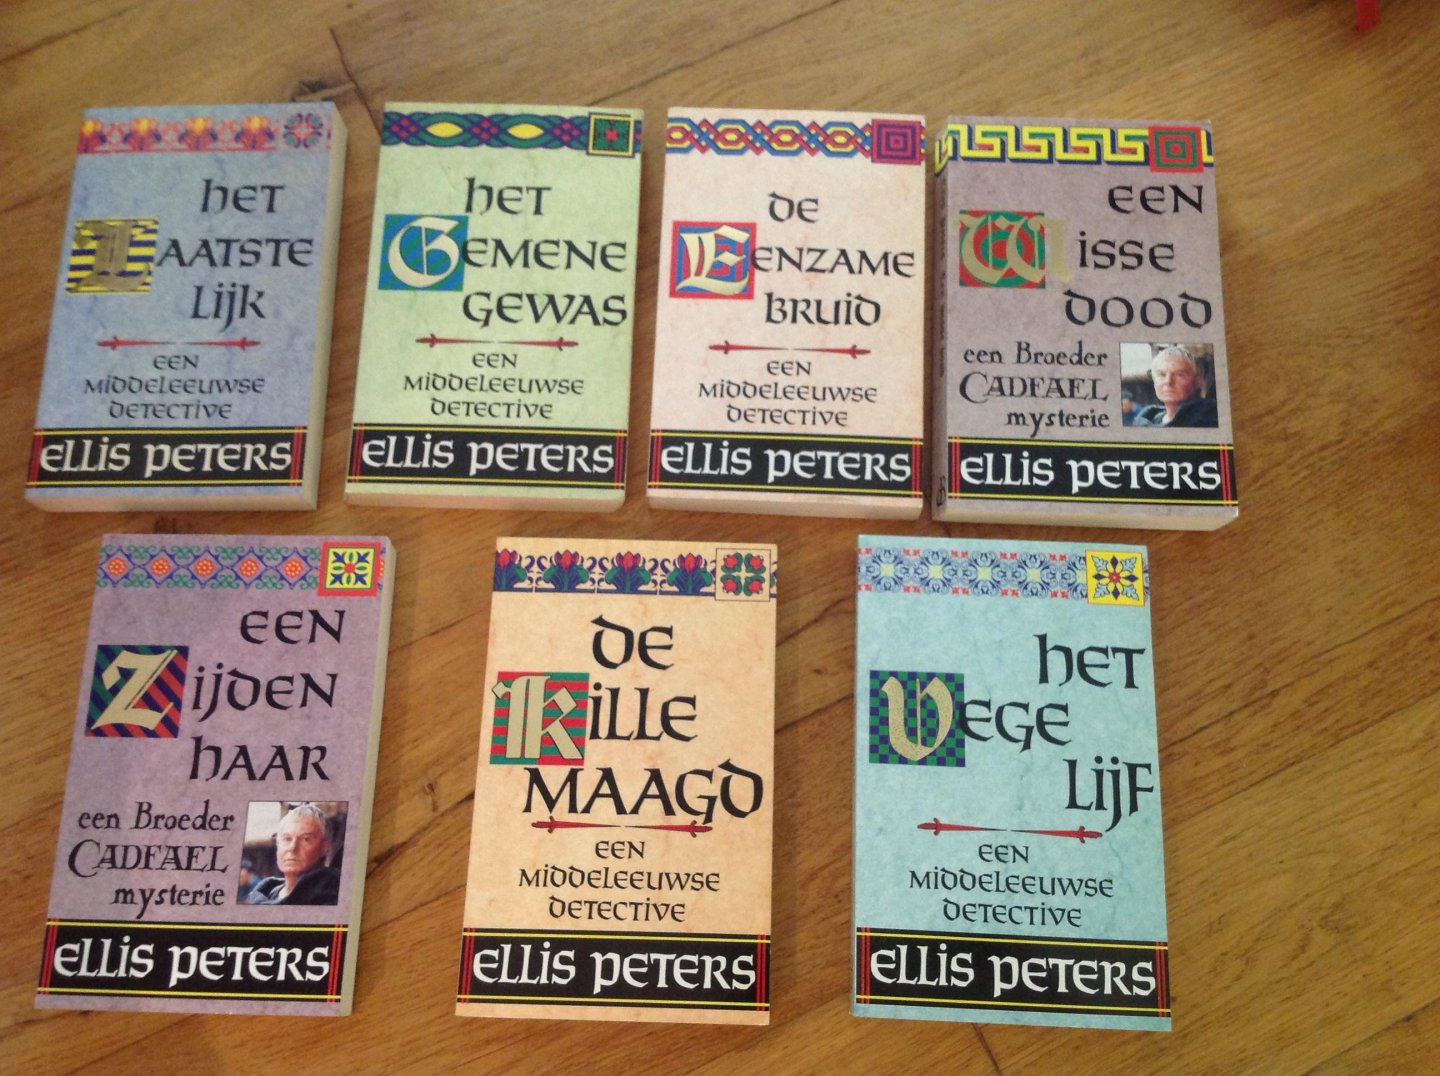 Ellis peters - Een zijden haar / druk 5 (serie) 14 titels.